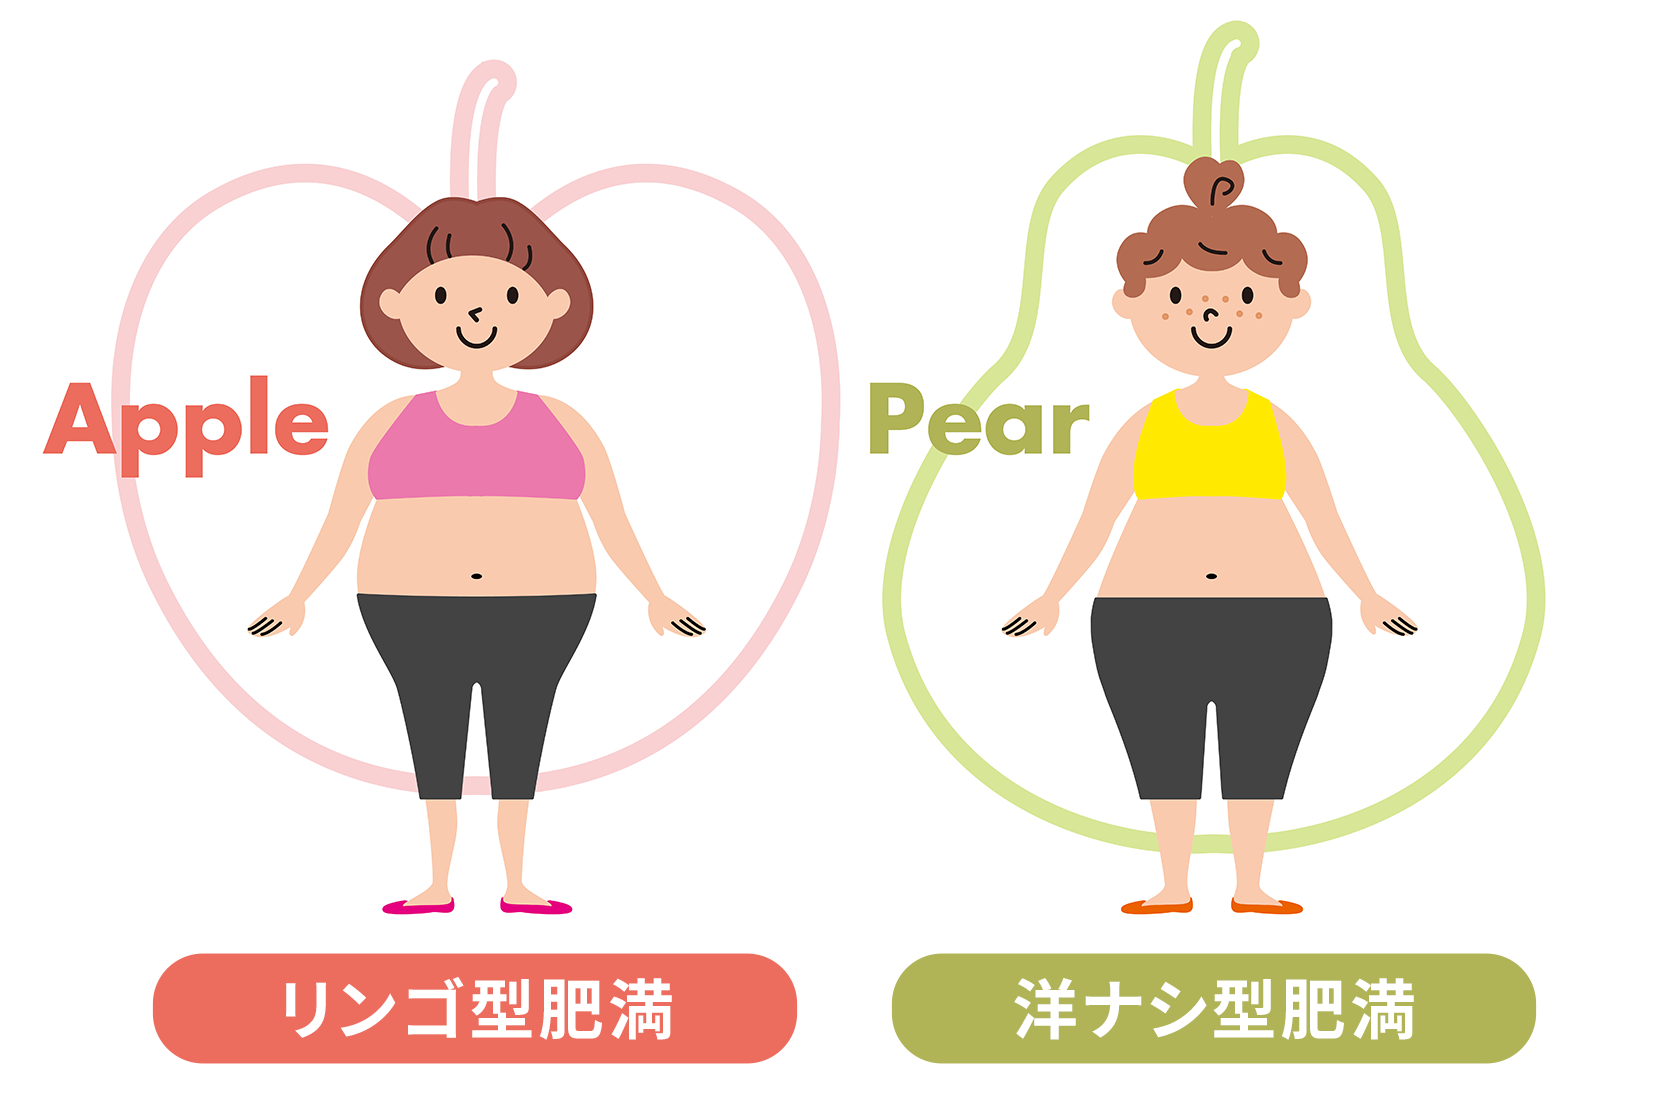 リンゴ型肥満と洋ナシ型肥満